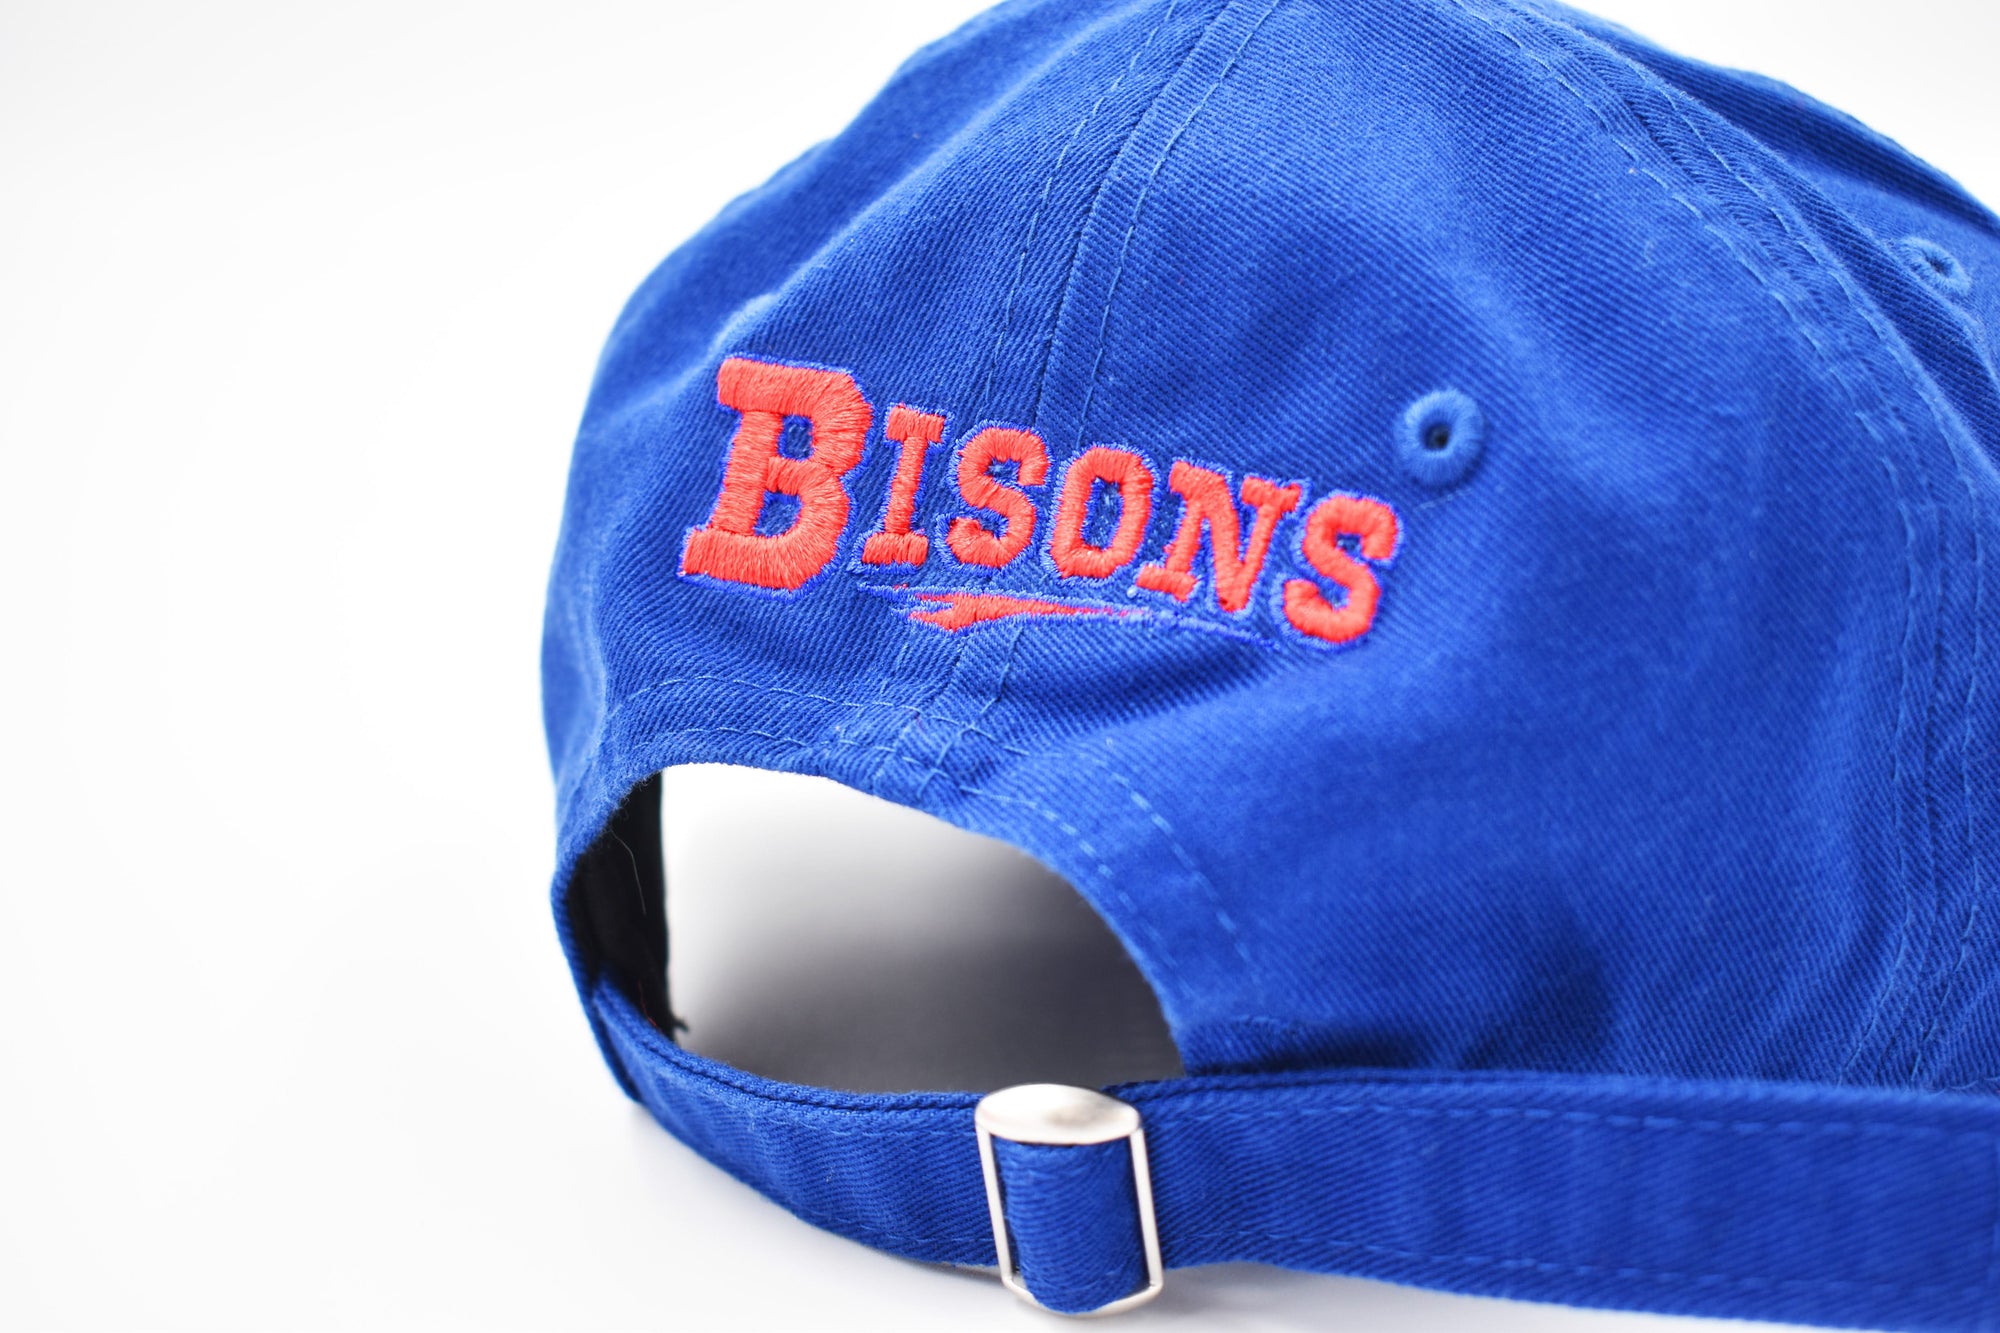 New Era Buffalo Bisons Royal Blue Adjustable Hat